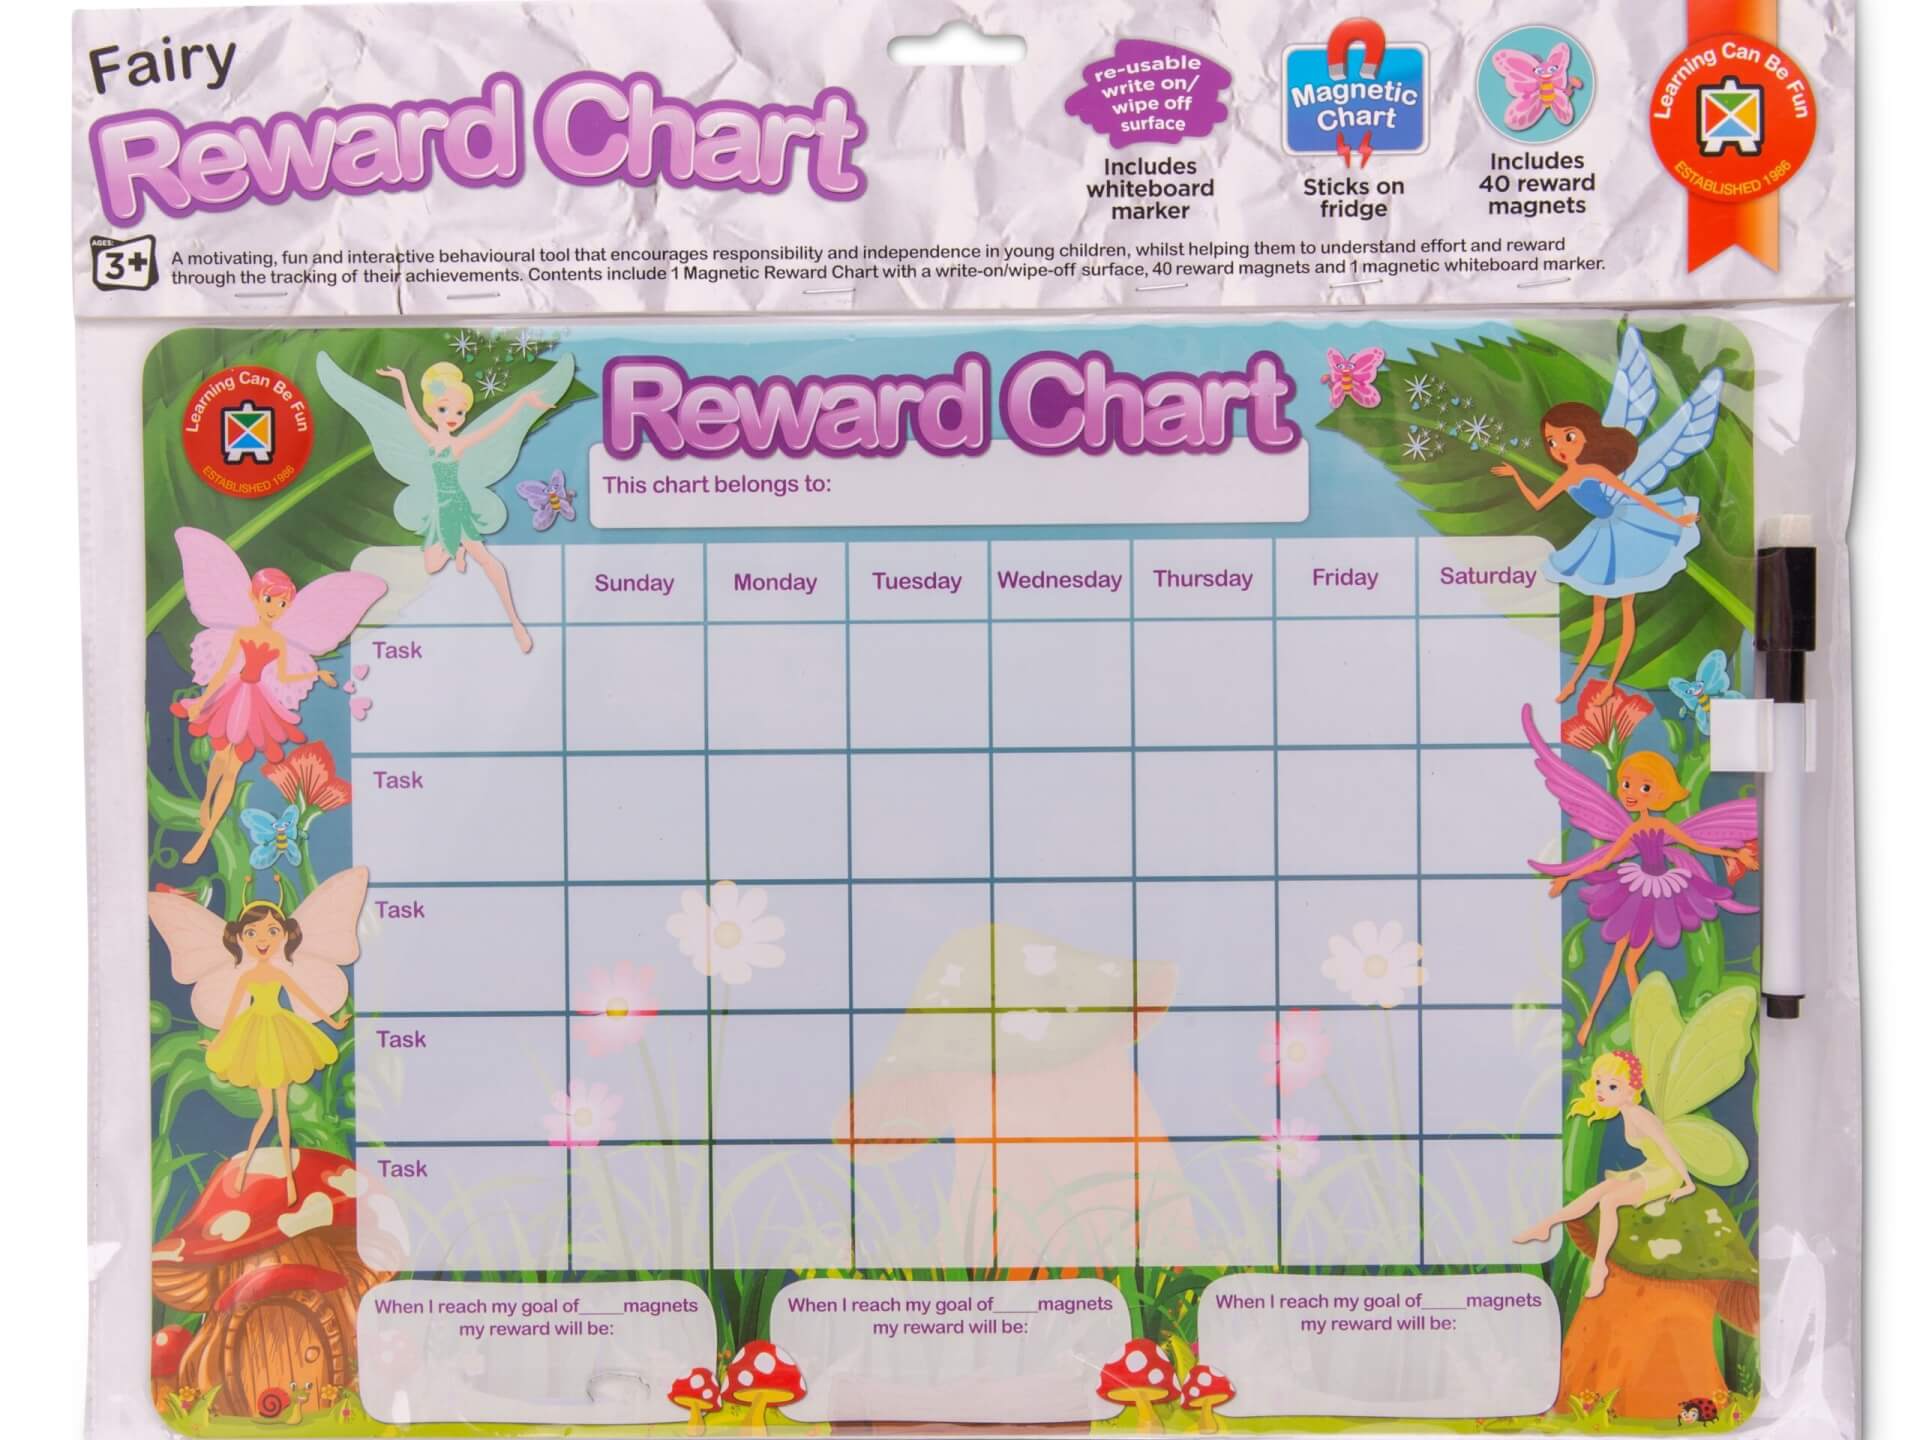 Fairies reward chart